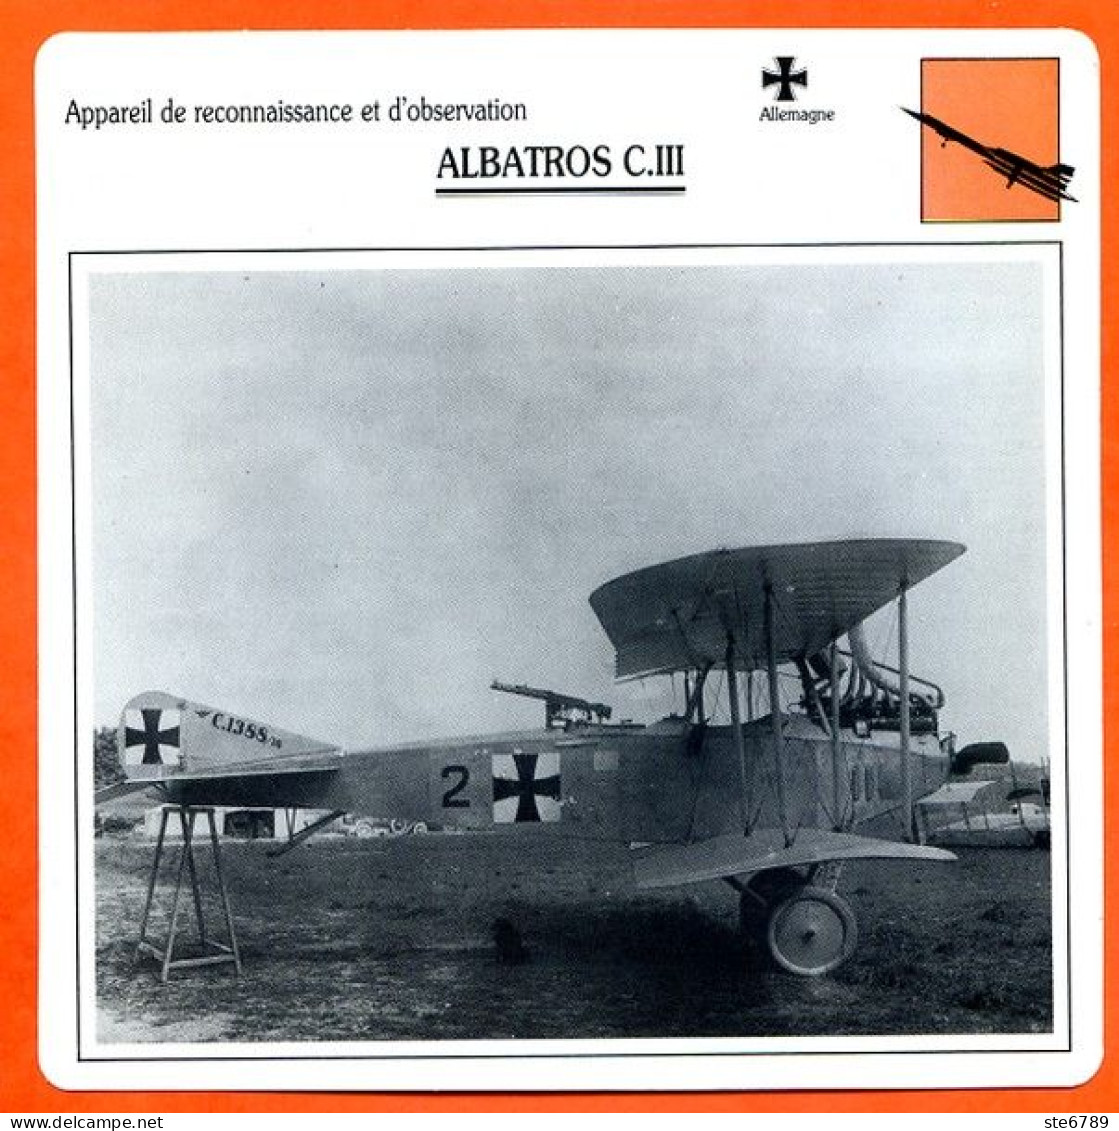 Fiche Aviation ALBATROS C III  / Avion Reconnaissance Et Observation Allemagne  Avions - Avions